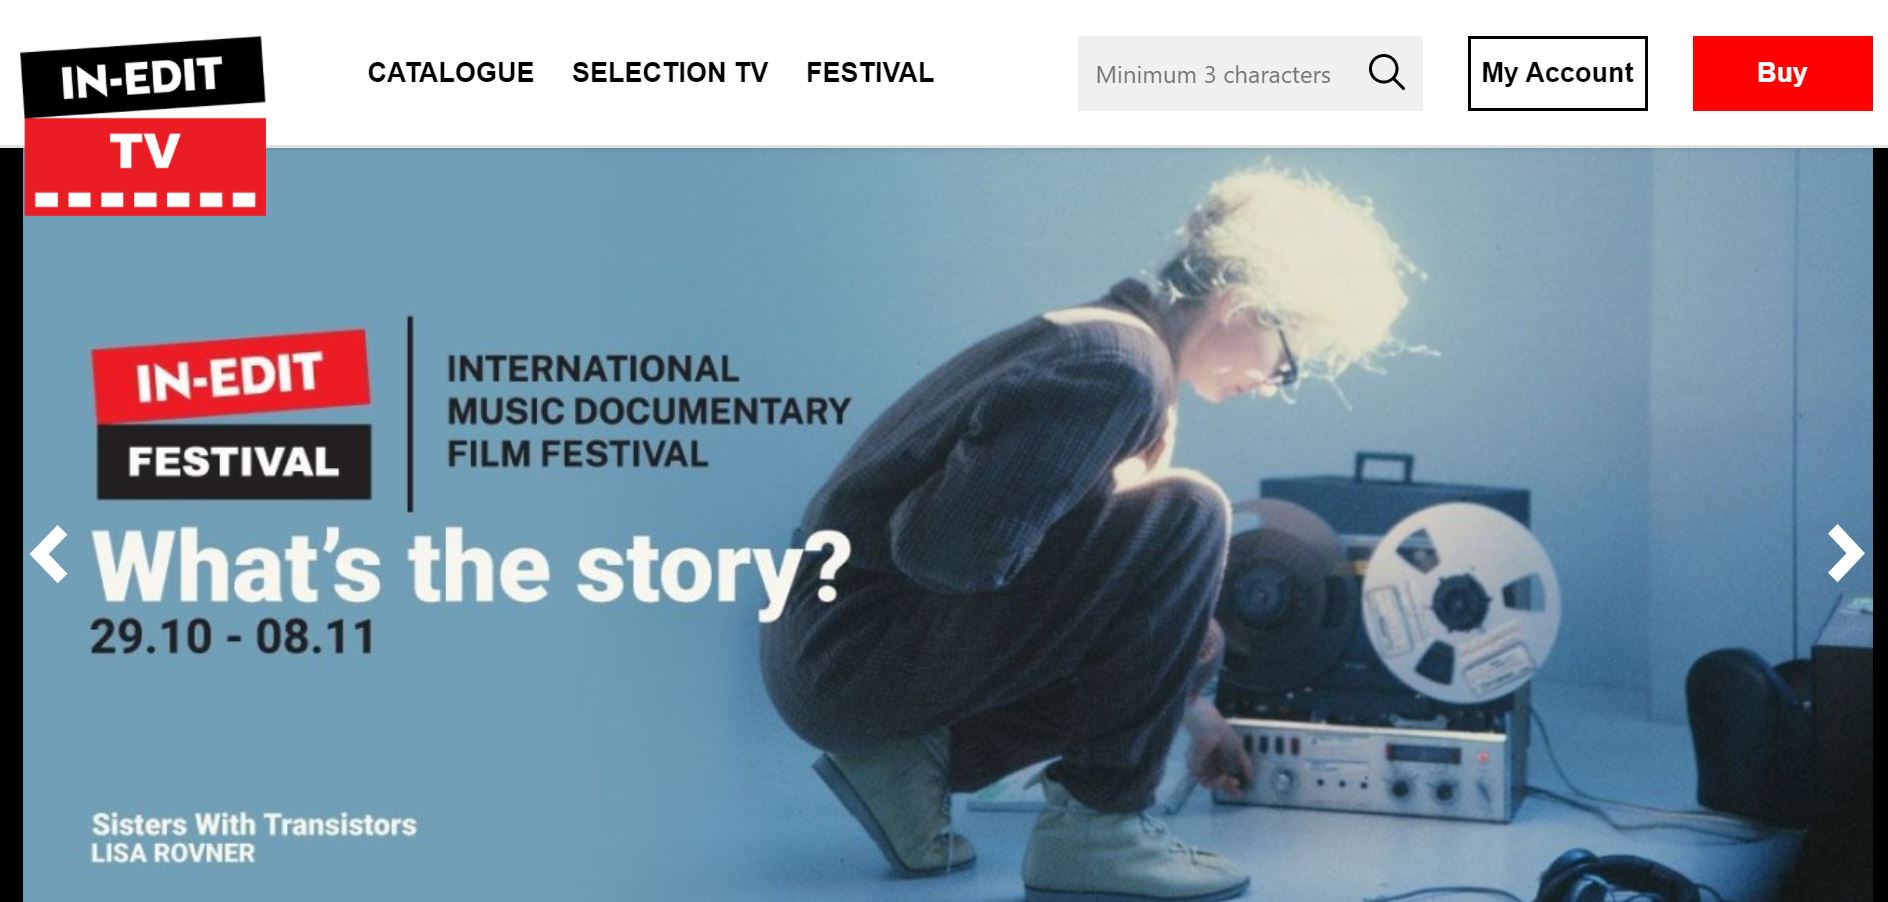 International music documentary film festival, In-Edit (image taken from their website)